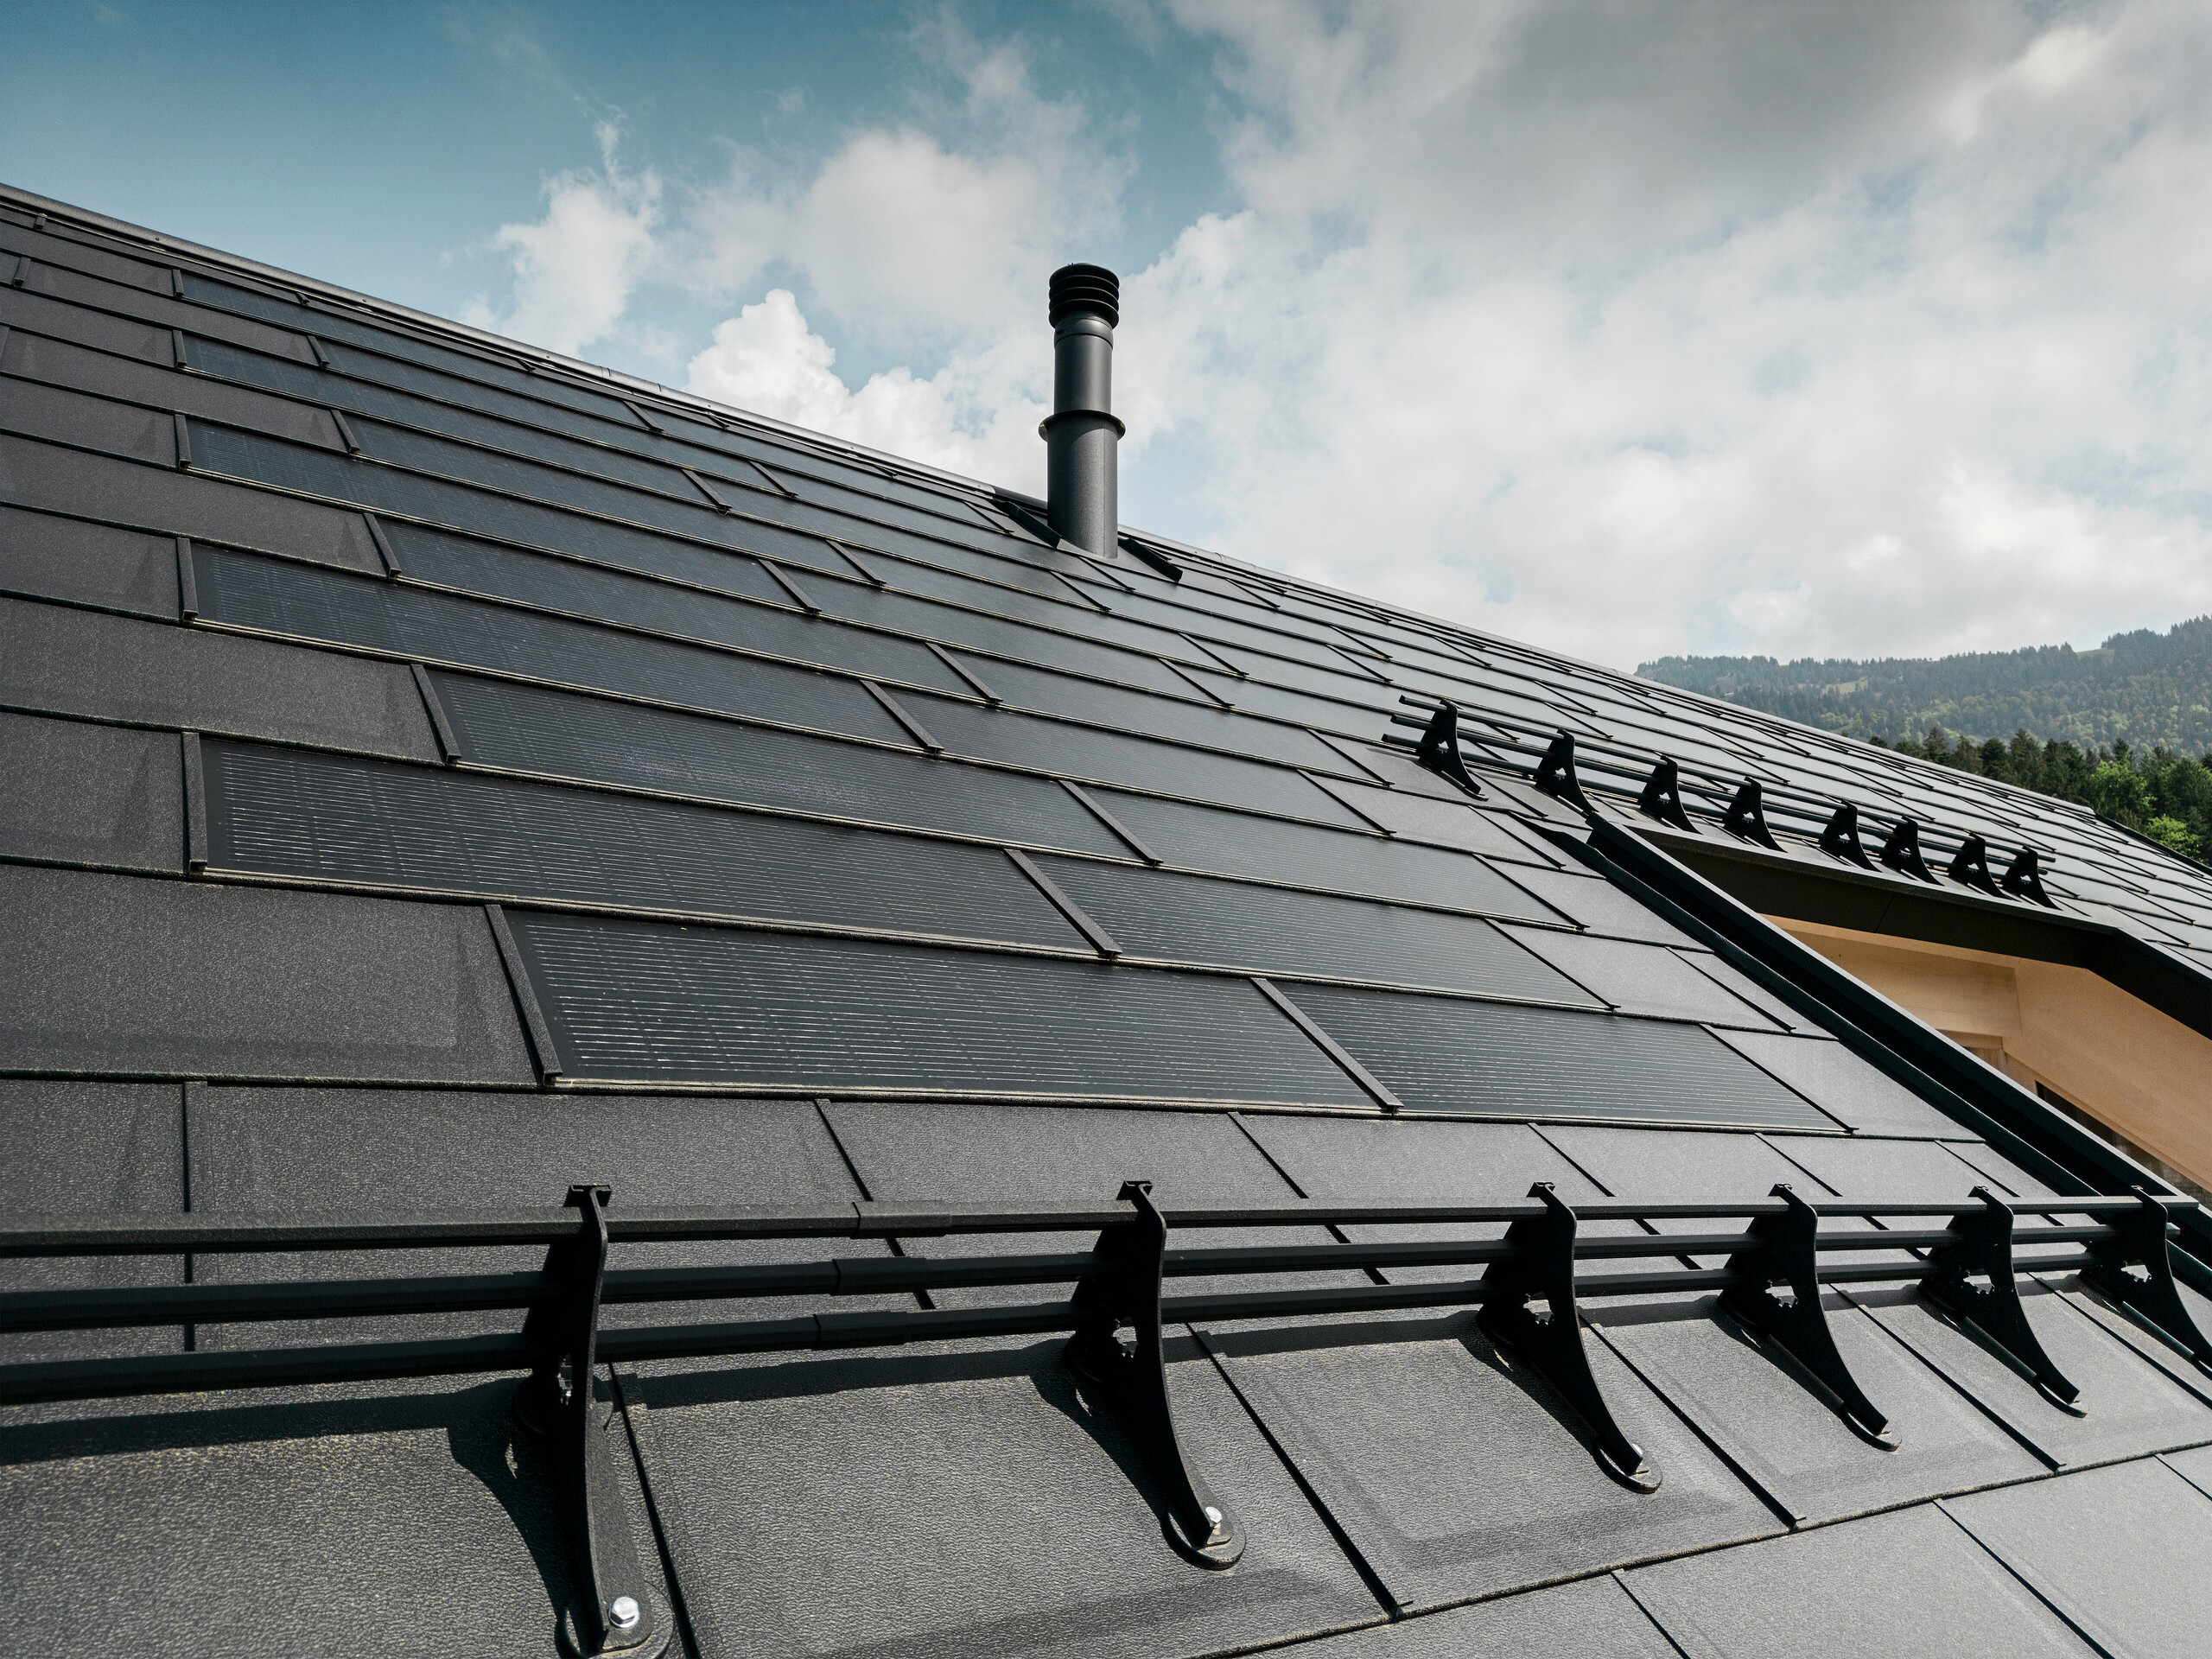 Nahaufnahme der effizienten PREFA Solardachplatte, welche sich nahtlos integriert in das schwarze Dach aus robusten PREFA Dachplatten R.16. Die Kombination aus nachhaltiger Energiegewinnung und langlebigem Aluminiumdach bietet eine ökologische und ästhetische Dachlösung, die sich harmonisch in die natürliche Landschaft einfügt.